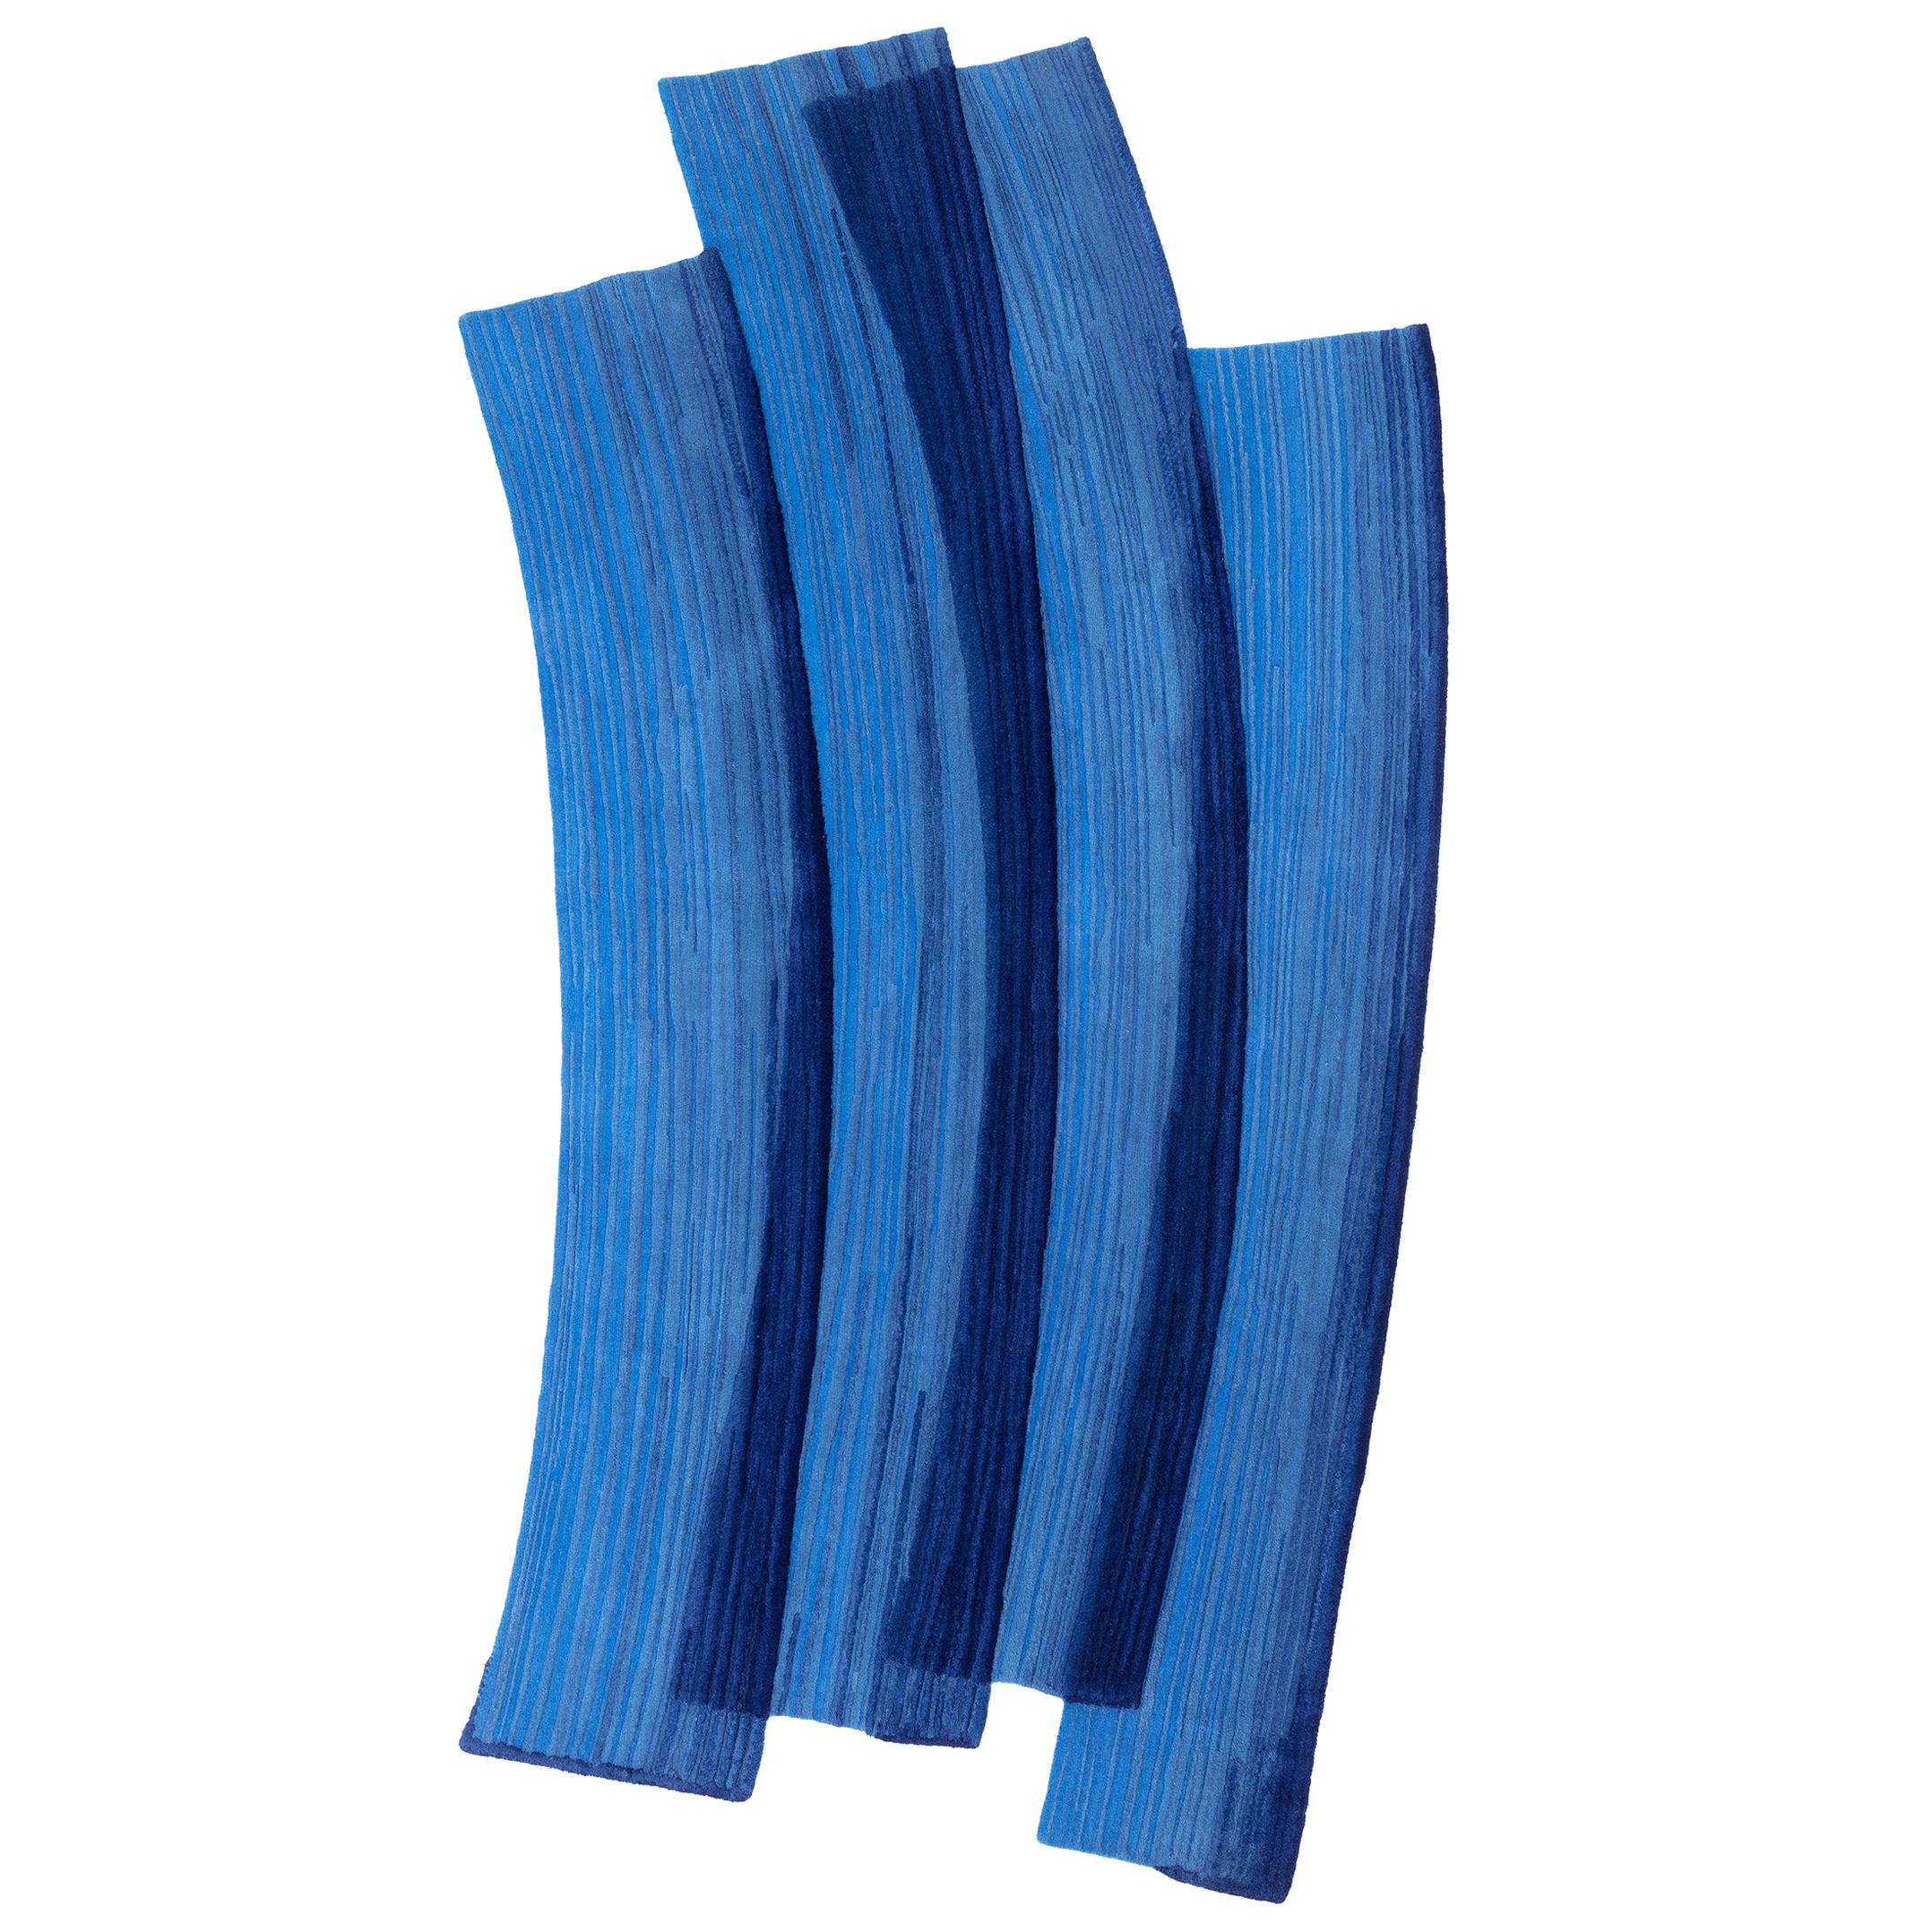 Gesture cc-tapis Stroke 1.0 Handmade Blue Rug in Wool by Sabine Marcelis For Sale